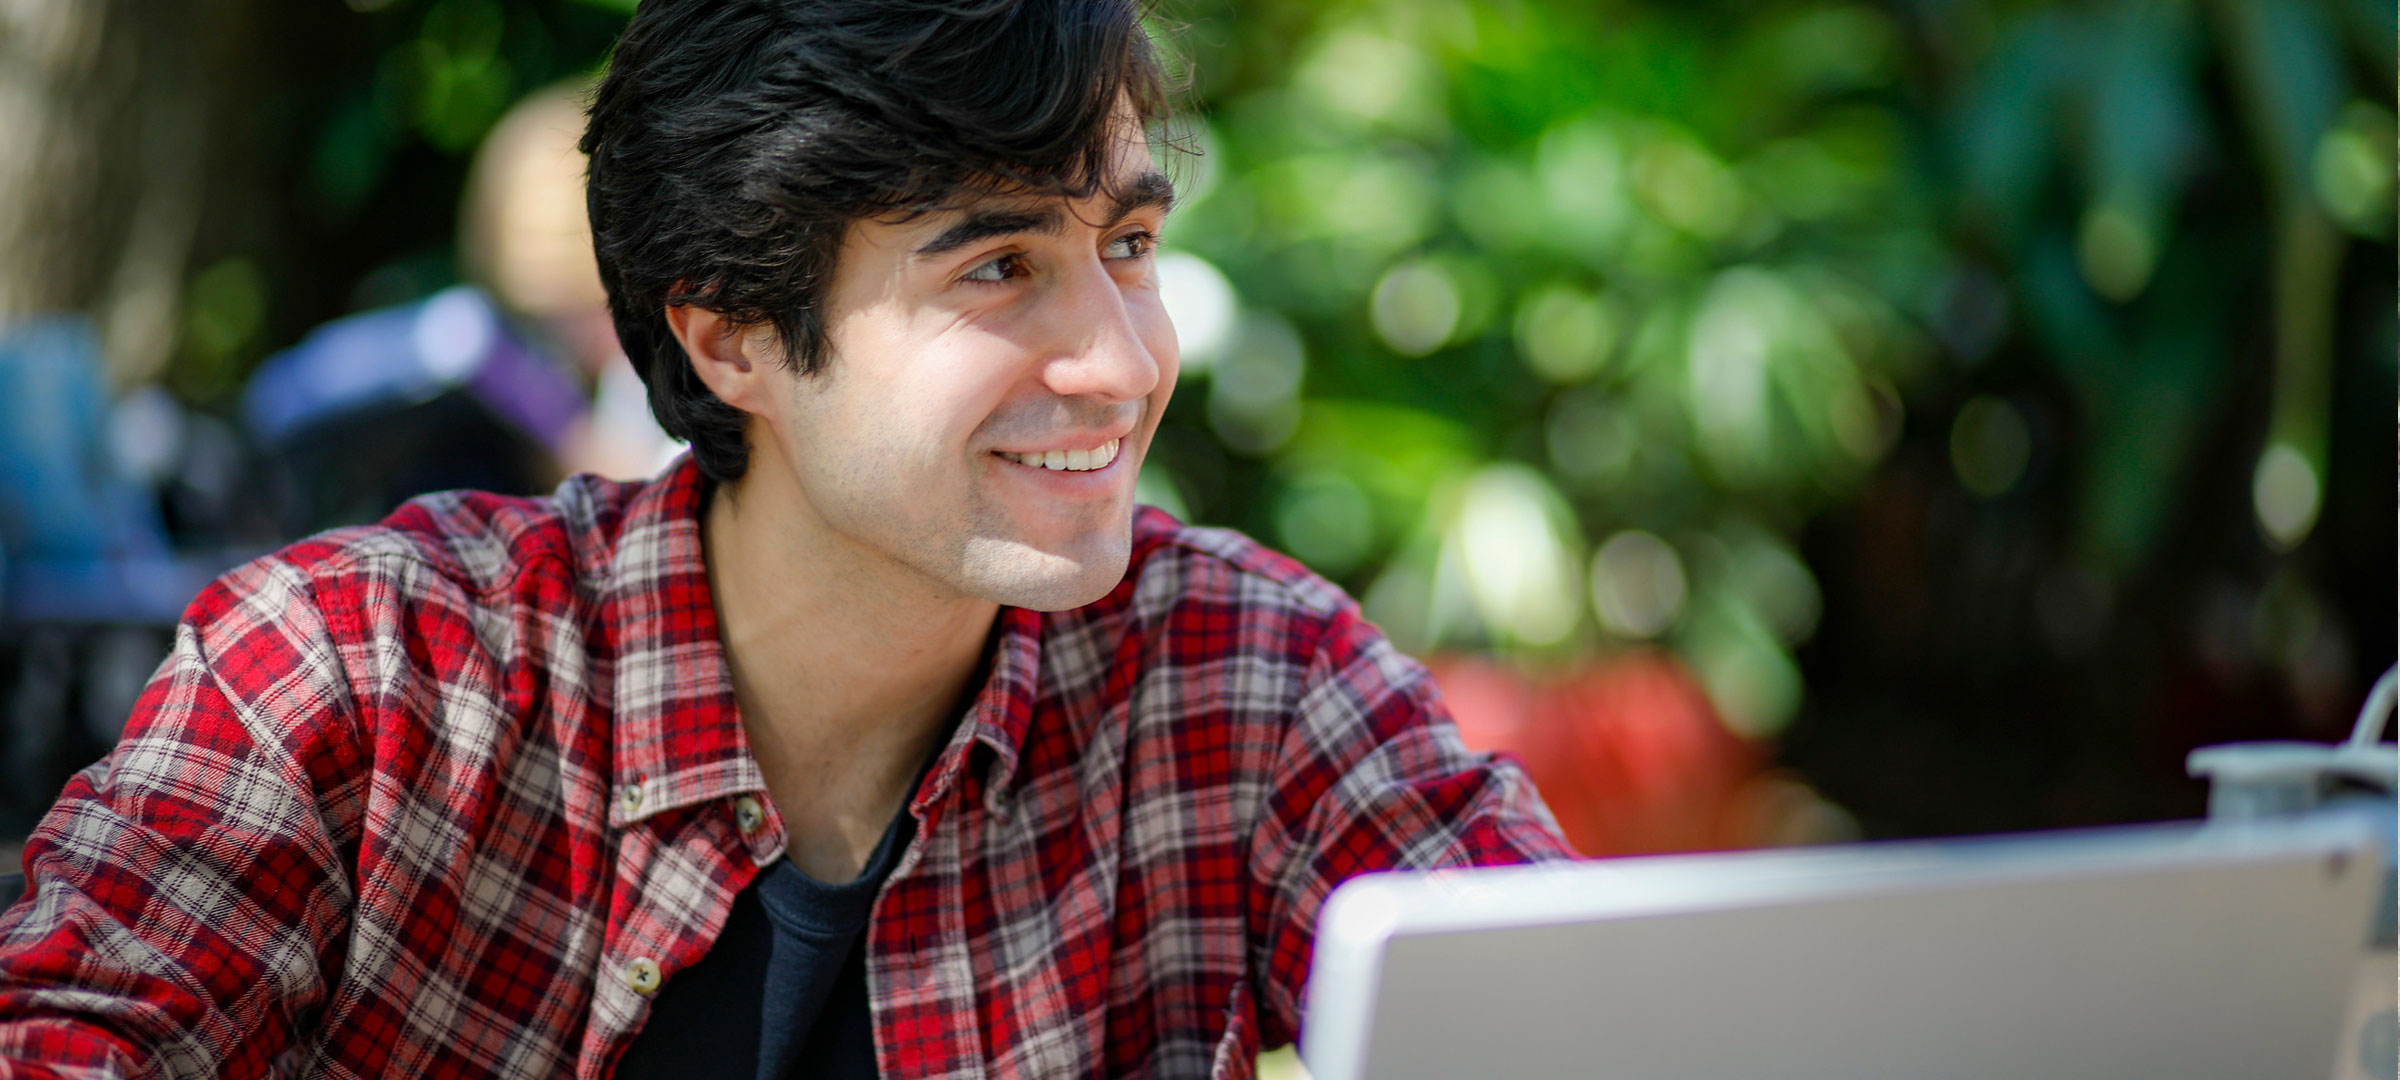 鶹ҹ student smiles while studying in front of his computer